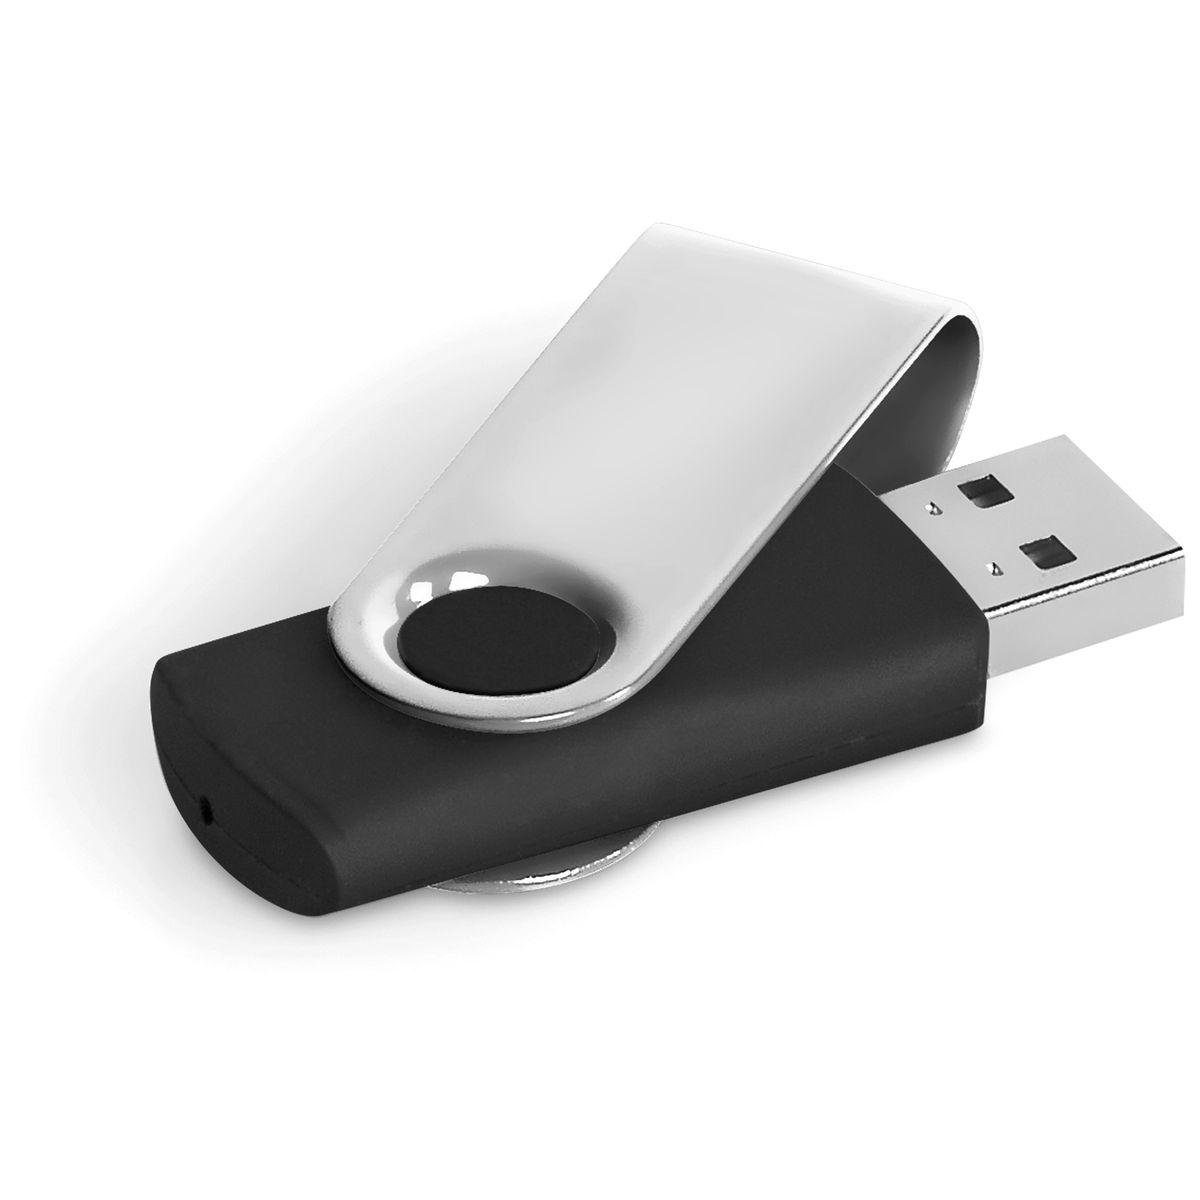 USB 2.0 Dahua U116 8GB Nắp xoay - Hàng chính hãng